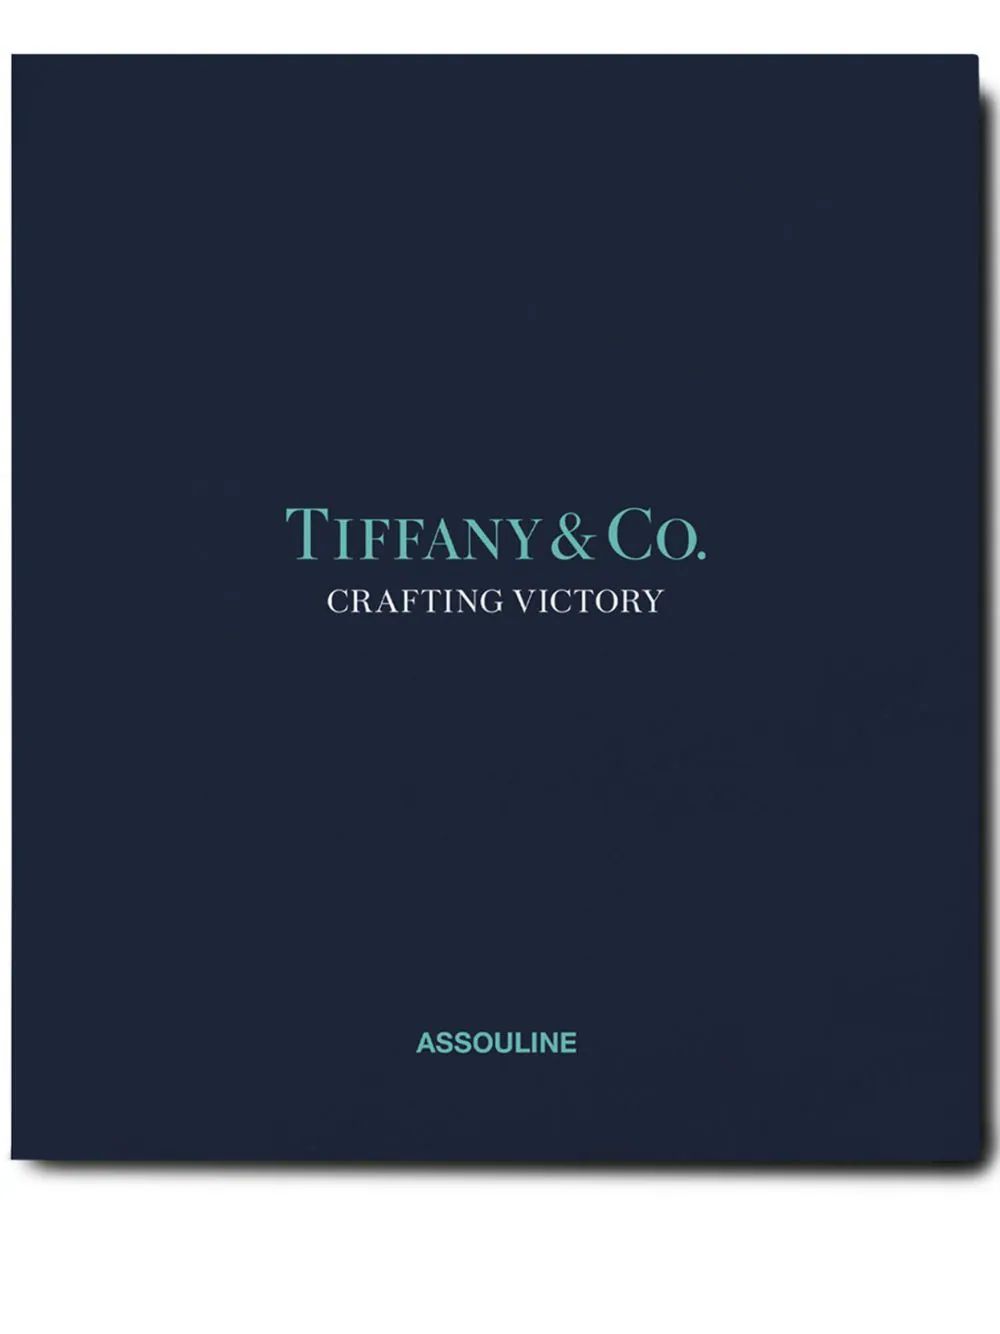 Tiffany & Co: Crafting Victory book | Farfetch Global